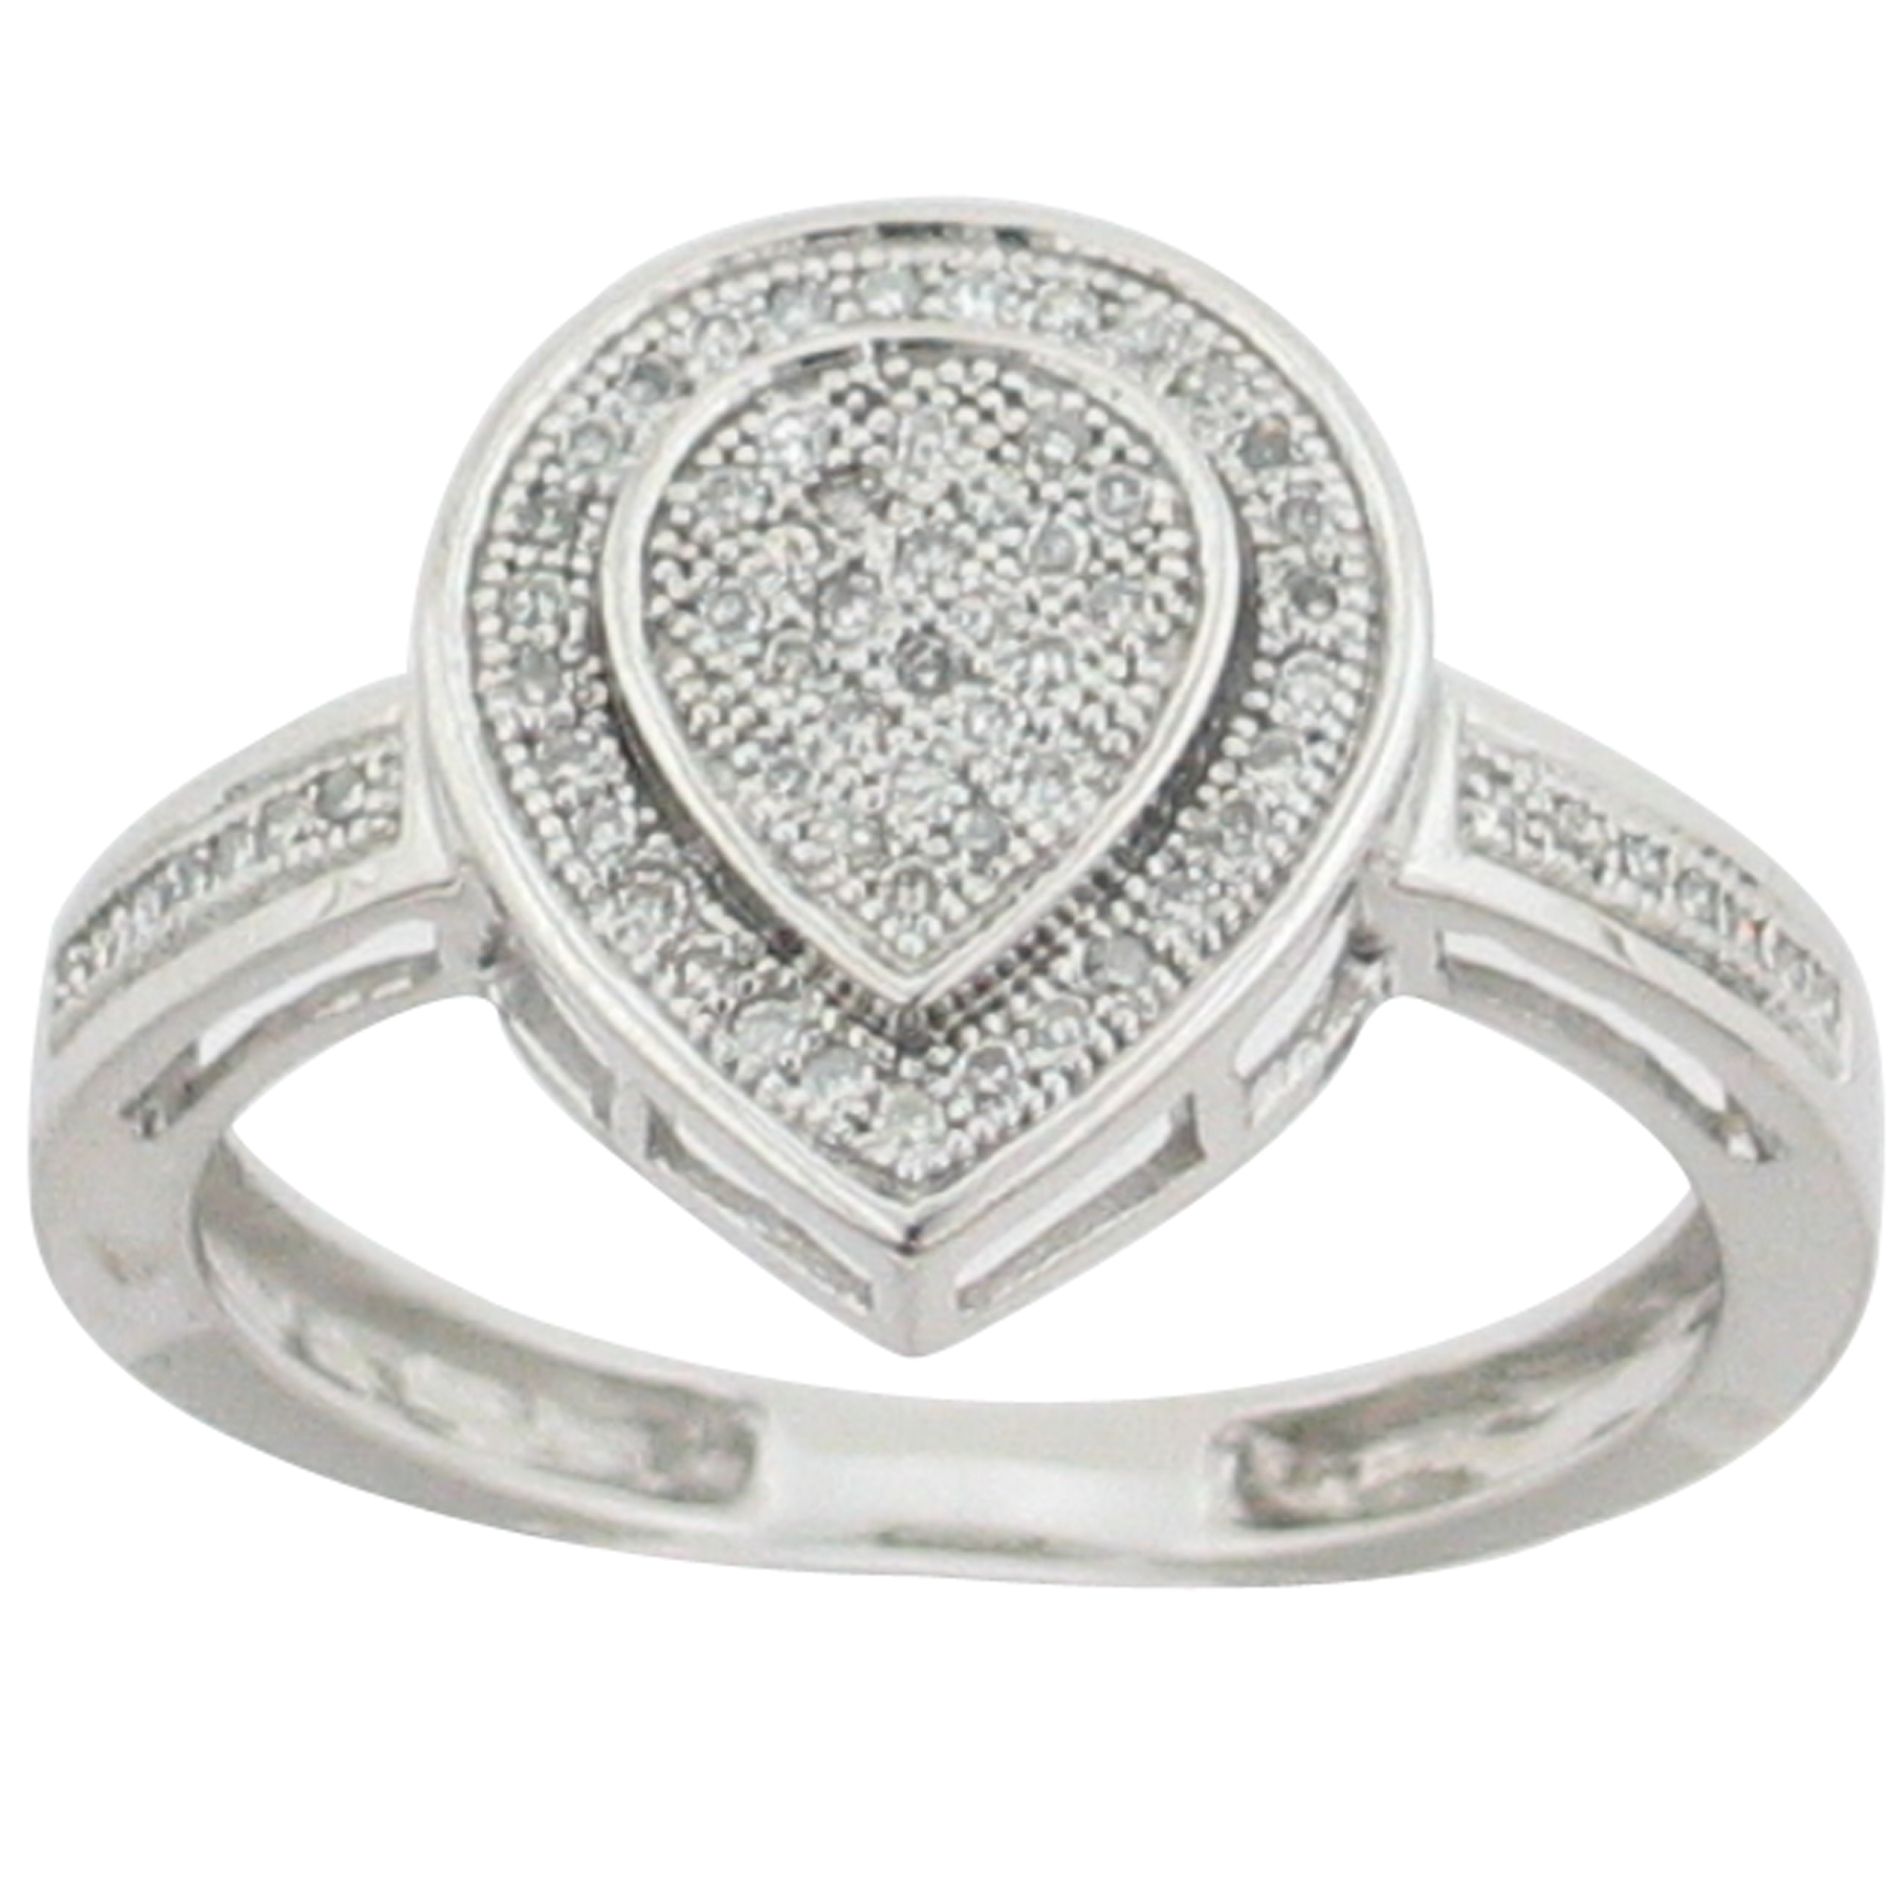 1/5 cttw Diamond Ring. 10kt White Gold